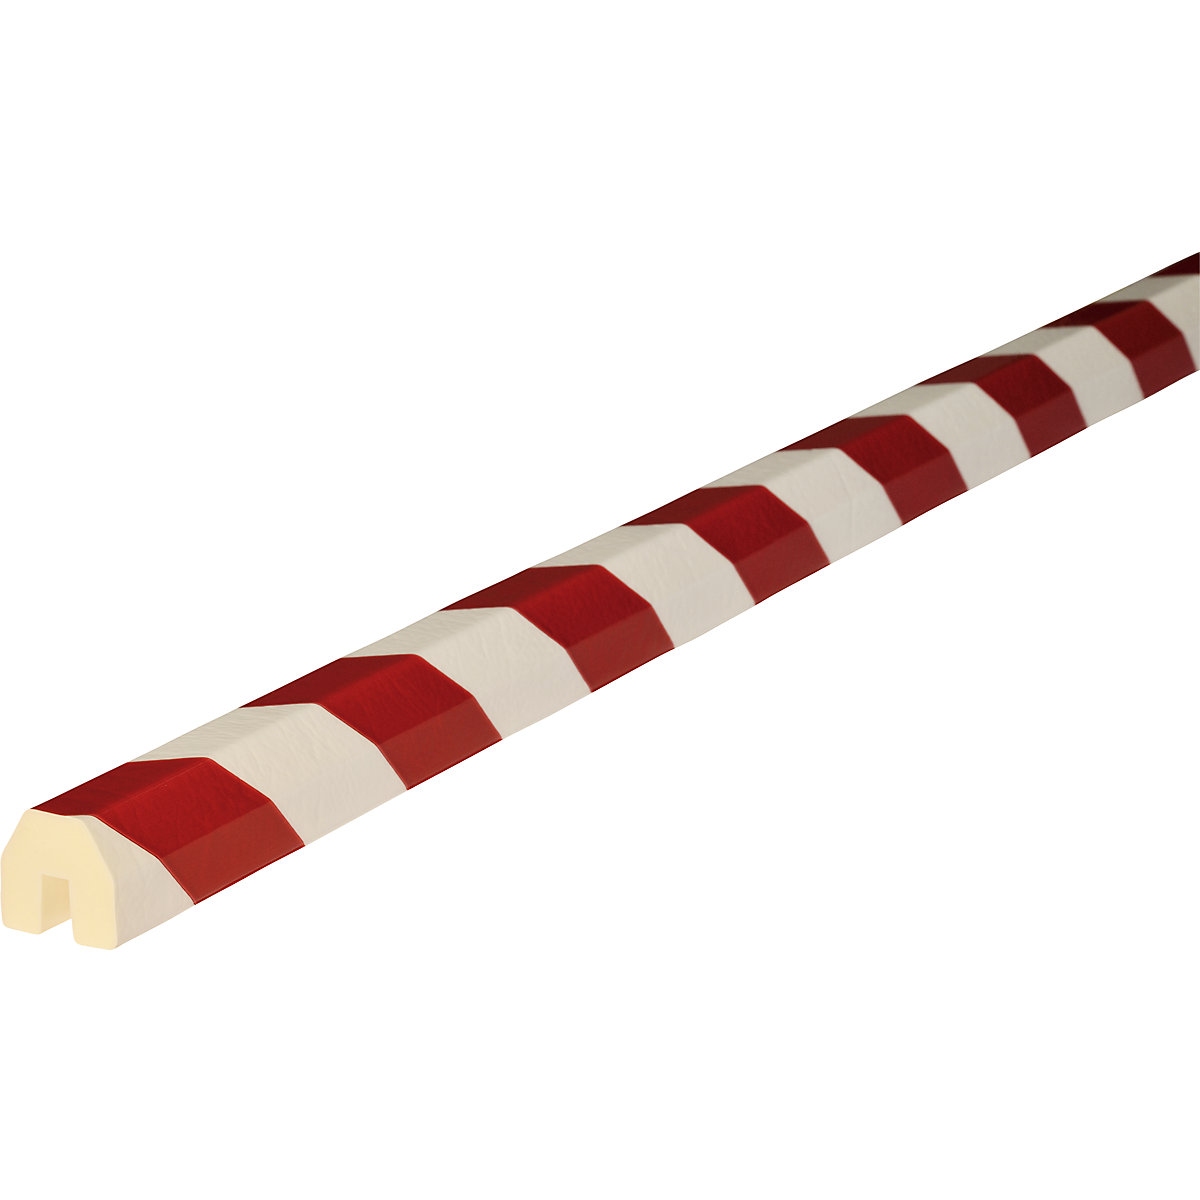 Protection des arêtes Knuffi® – SHG, type BB, 1 rouleau de 5 m, rouge / blanc